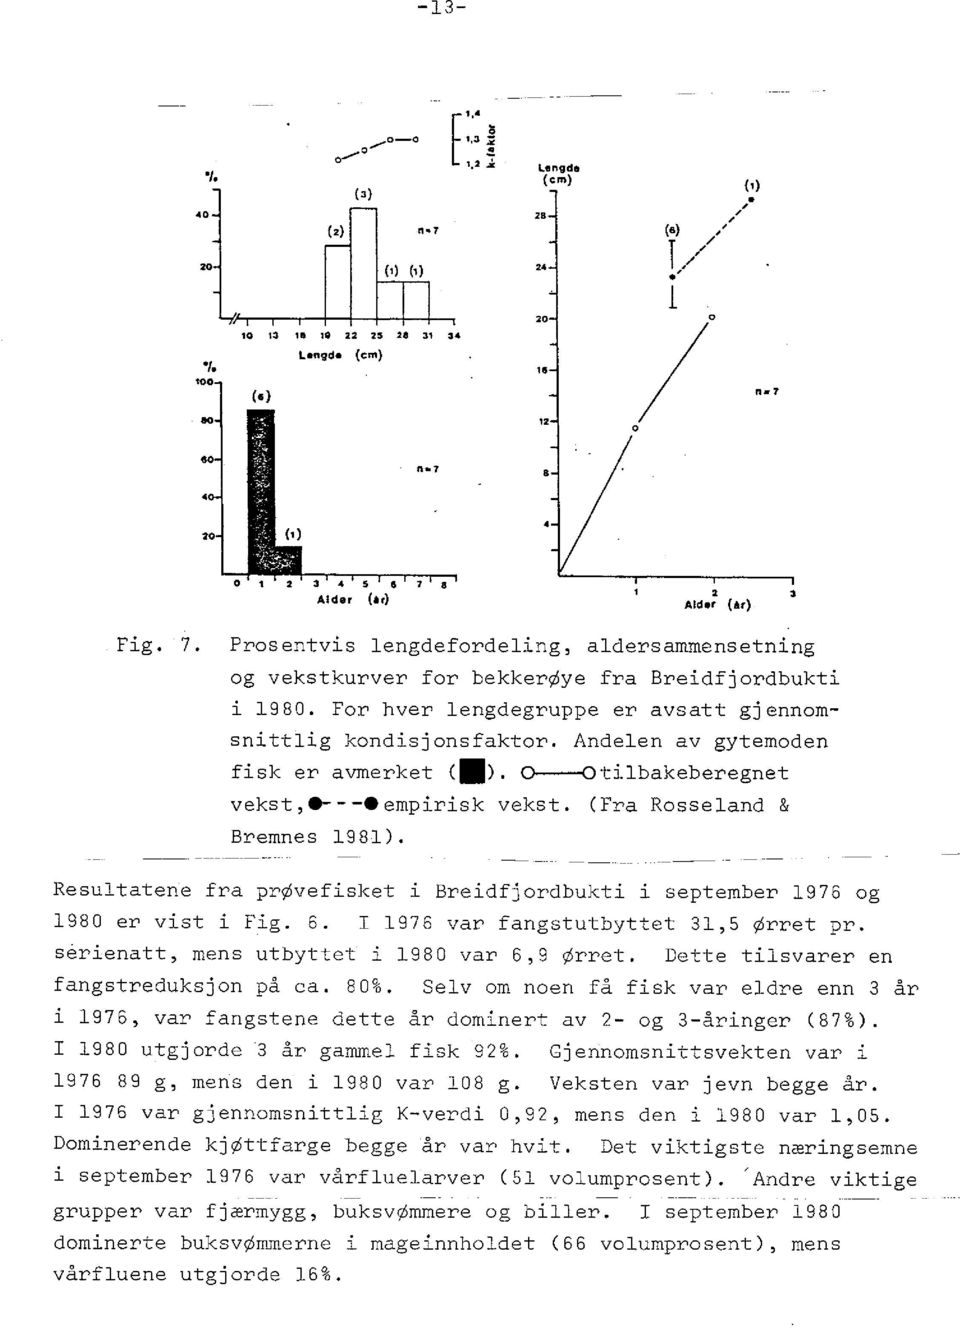 Andelen av gytemoden fisk er avmerket (e). 0--0tilbakeberegnet vekst,* -*empirisk vekst. (Fra Rosseland & Bremnes 1981).